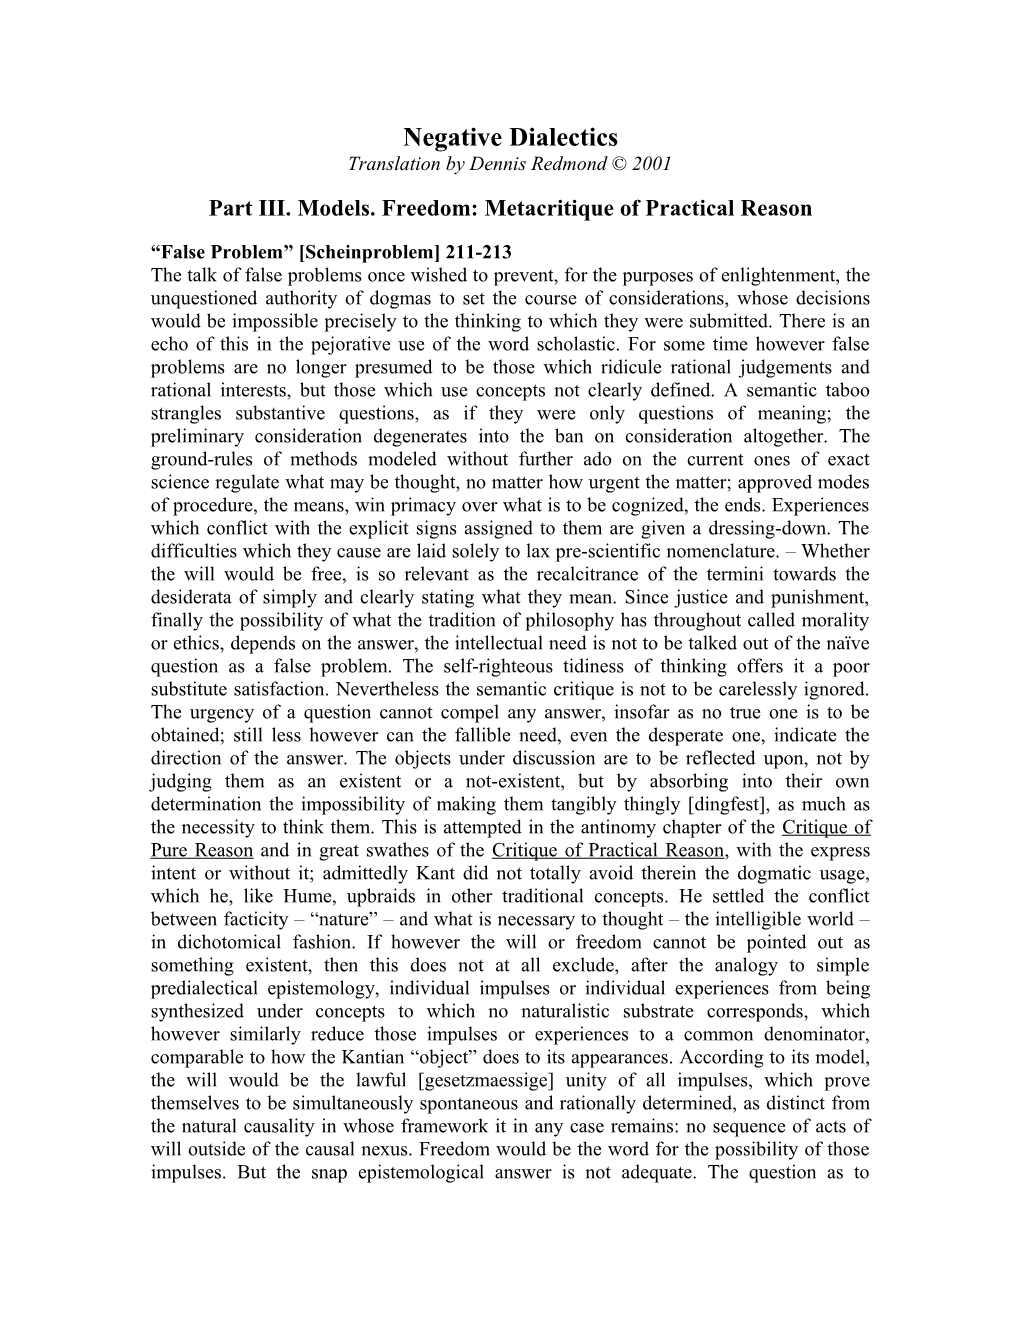 Part III. Models. Freedom: Metacritique of Practical Reason